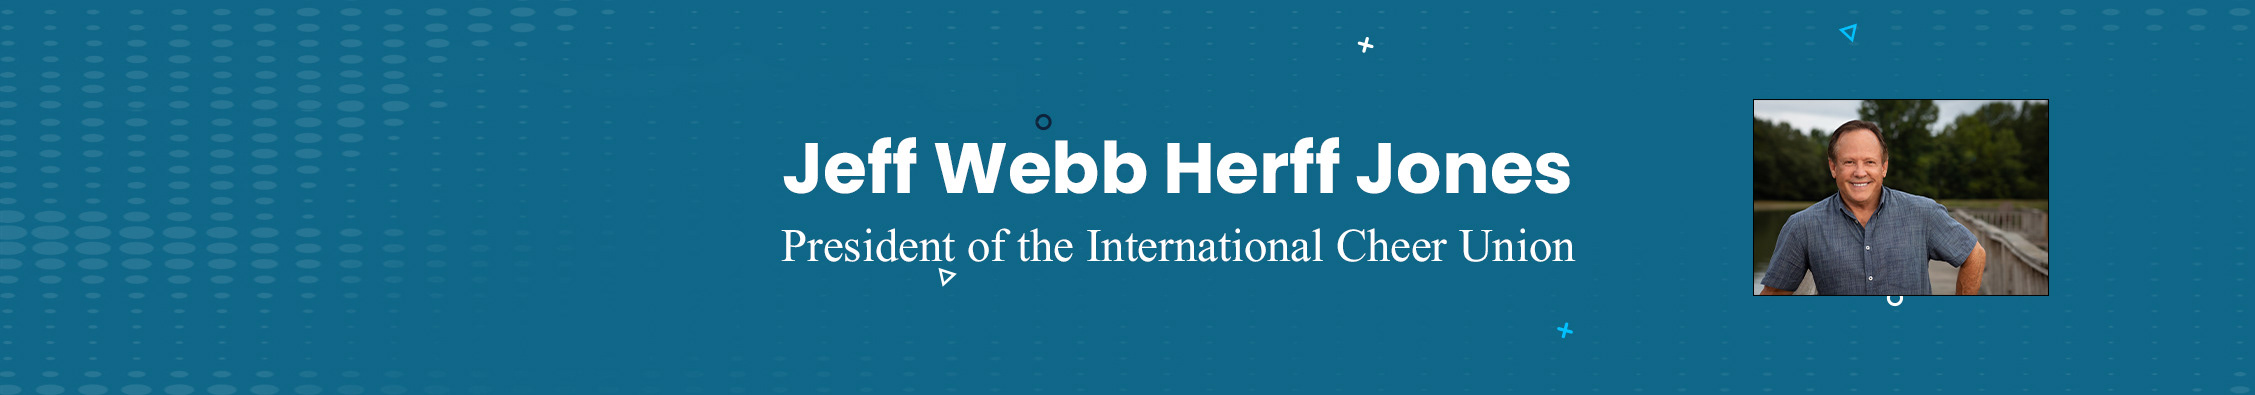 Jeff Webb Herff Jones's profile banner